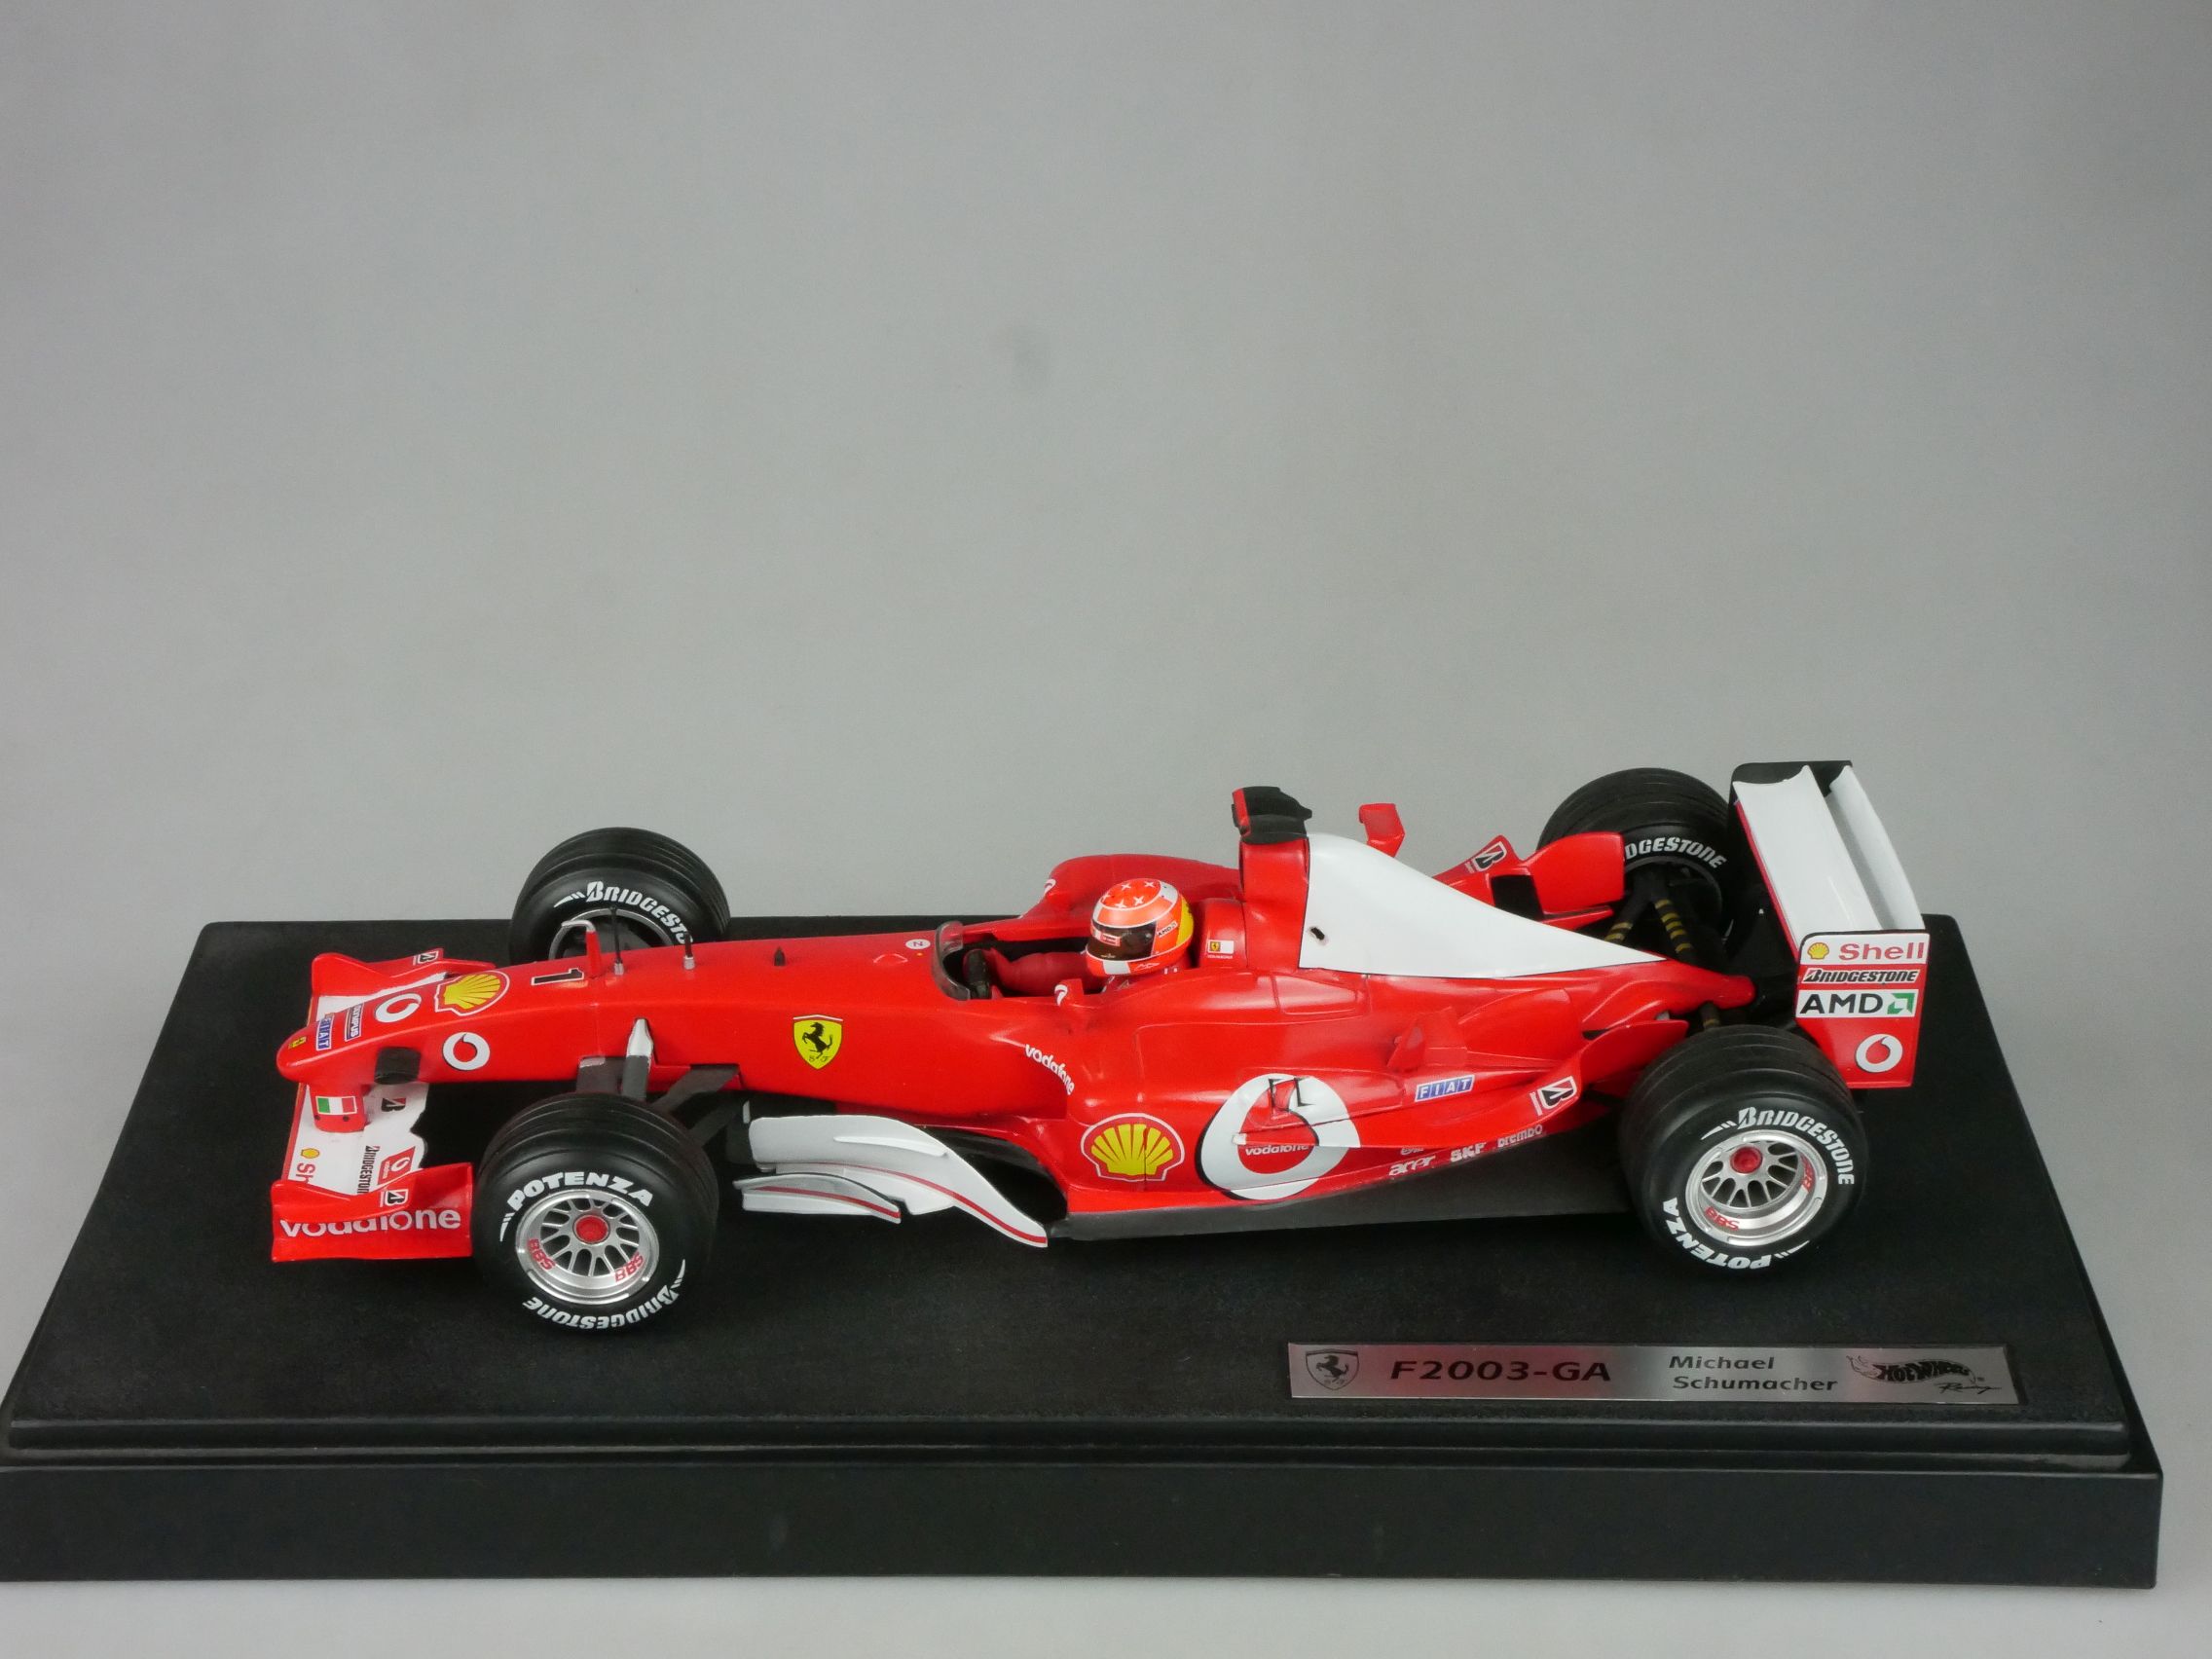 Hot Wheels F1 1/18 F2003-GA # 1 M. Schumacher B1023 Sockel 126746